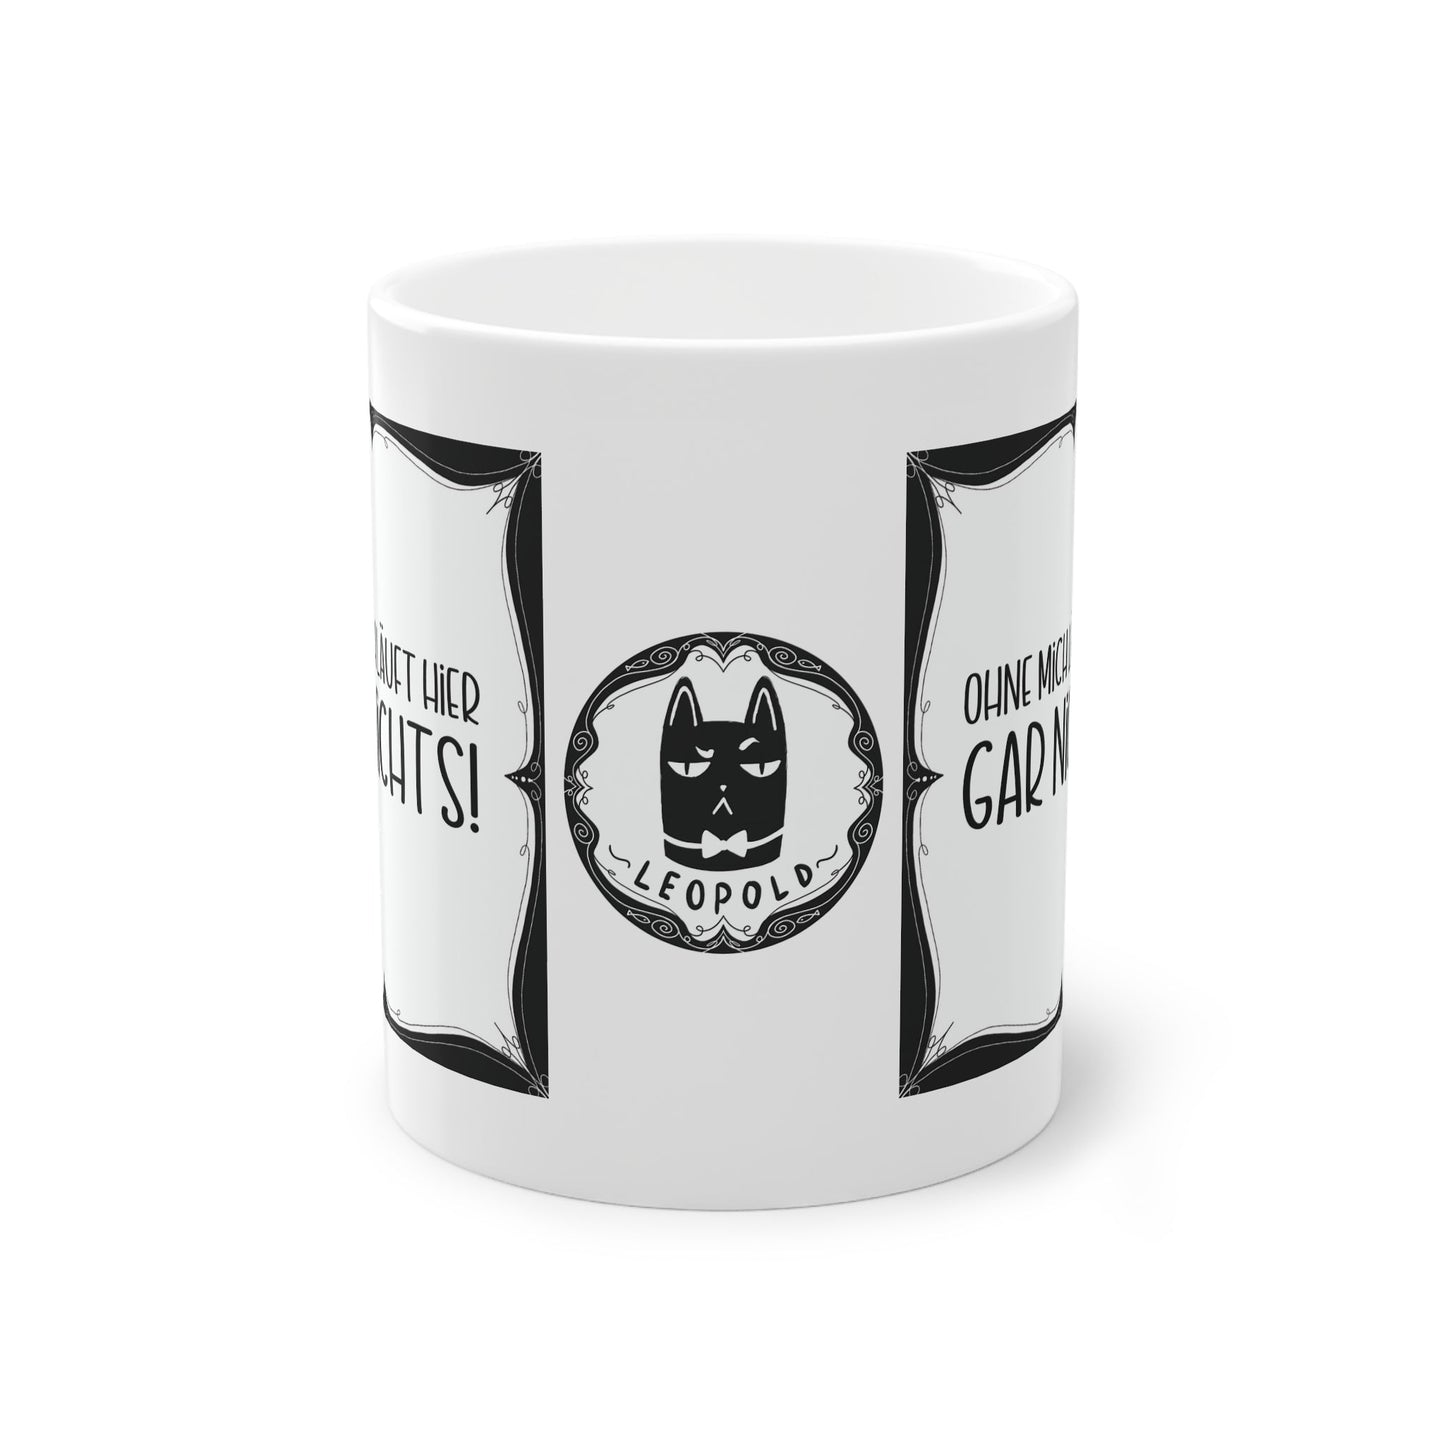 Sarkastische Tasse mit witzigem Spruch in schwarz weiß. Geschenk für Kollegen, Familie und Freunde.